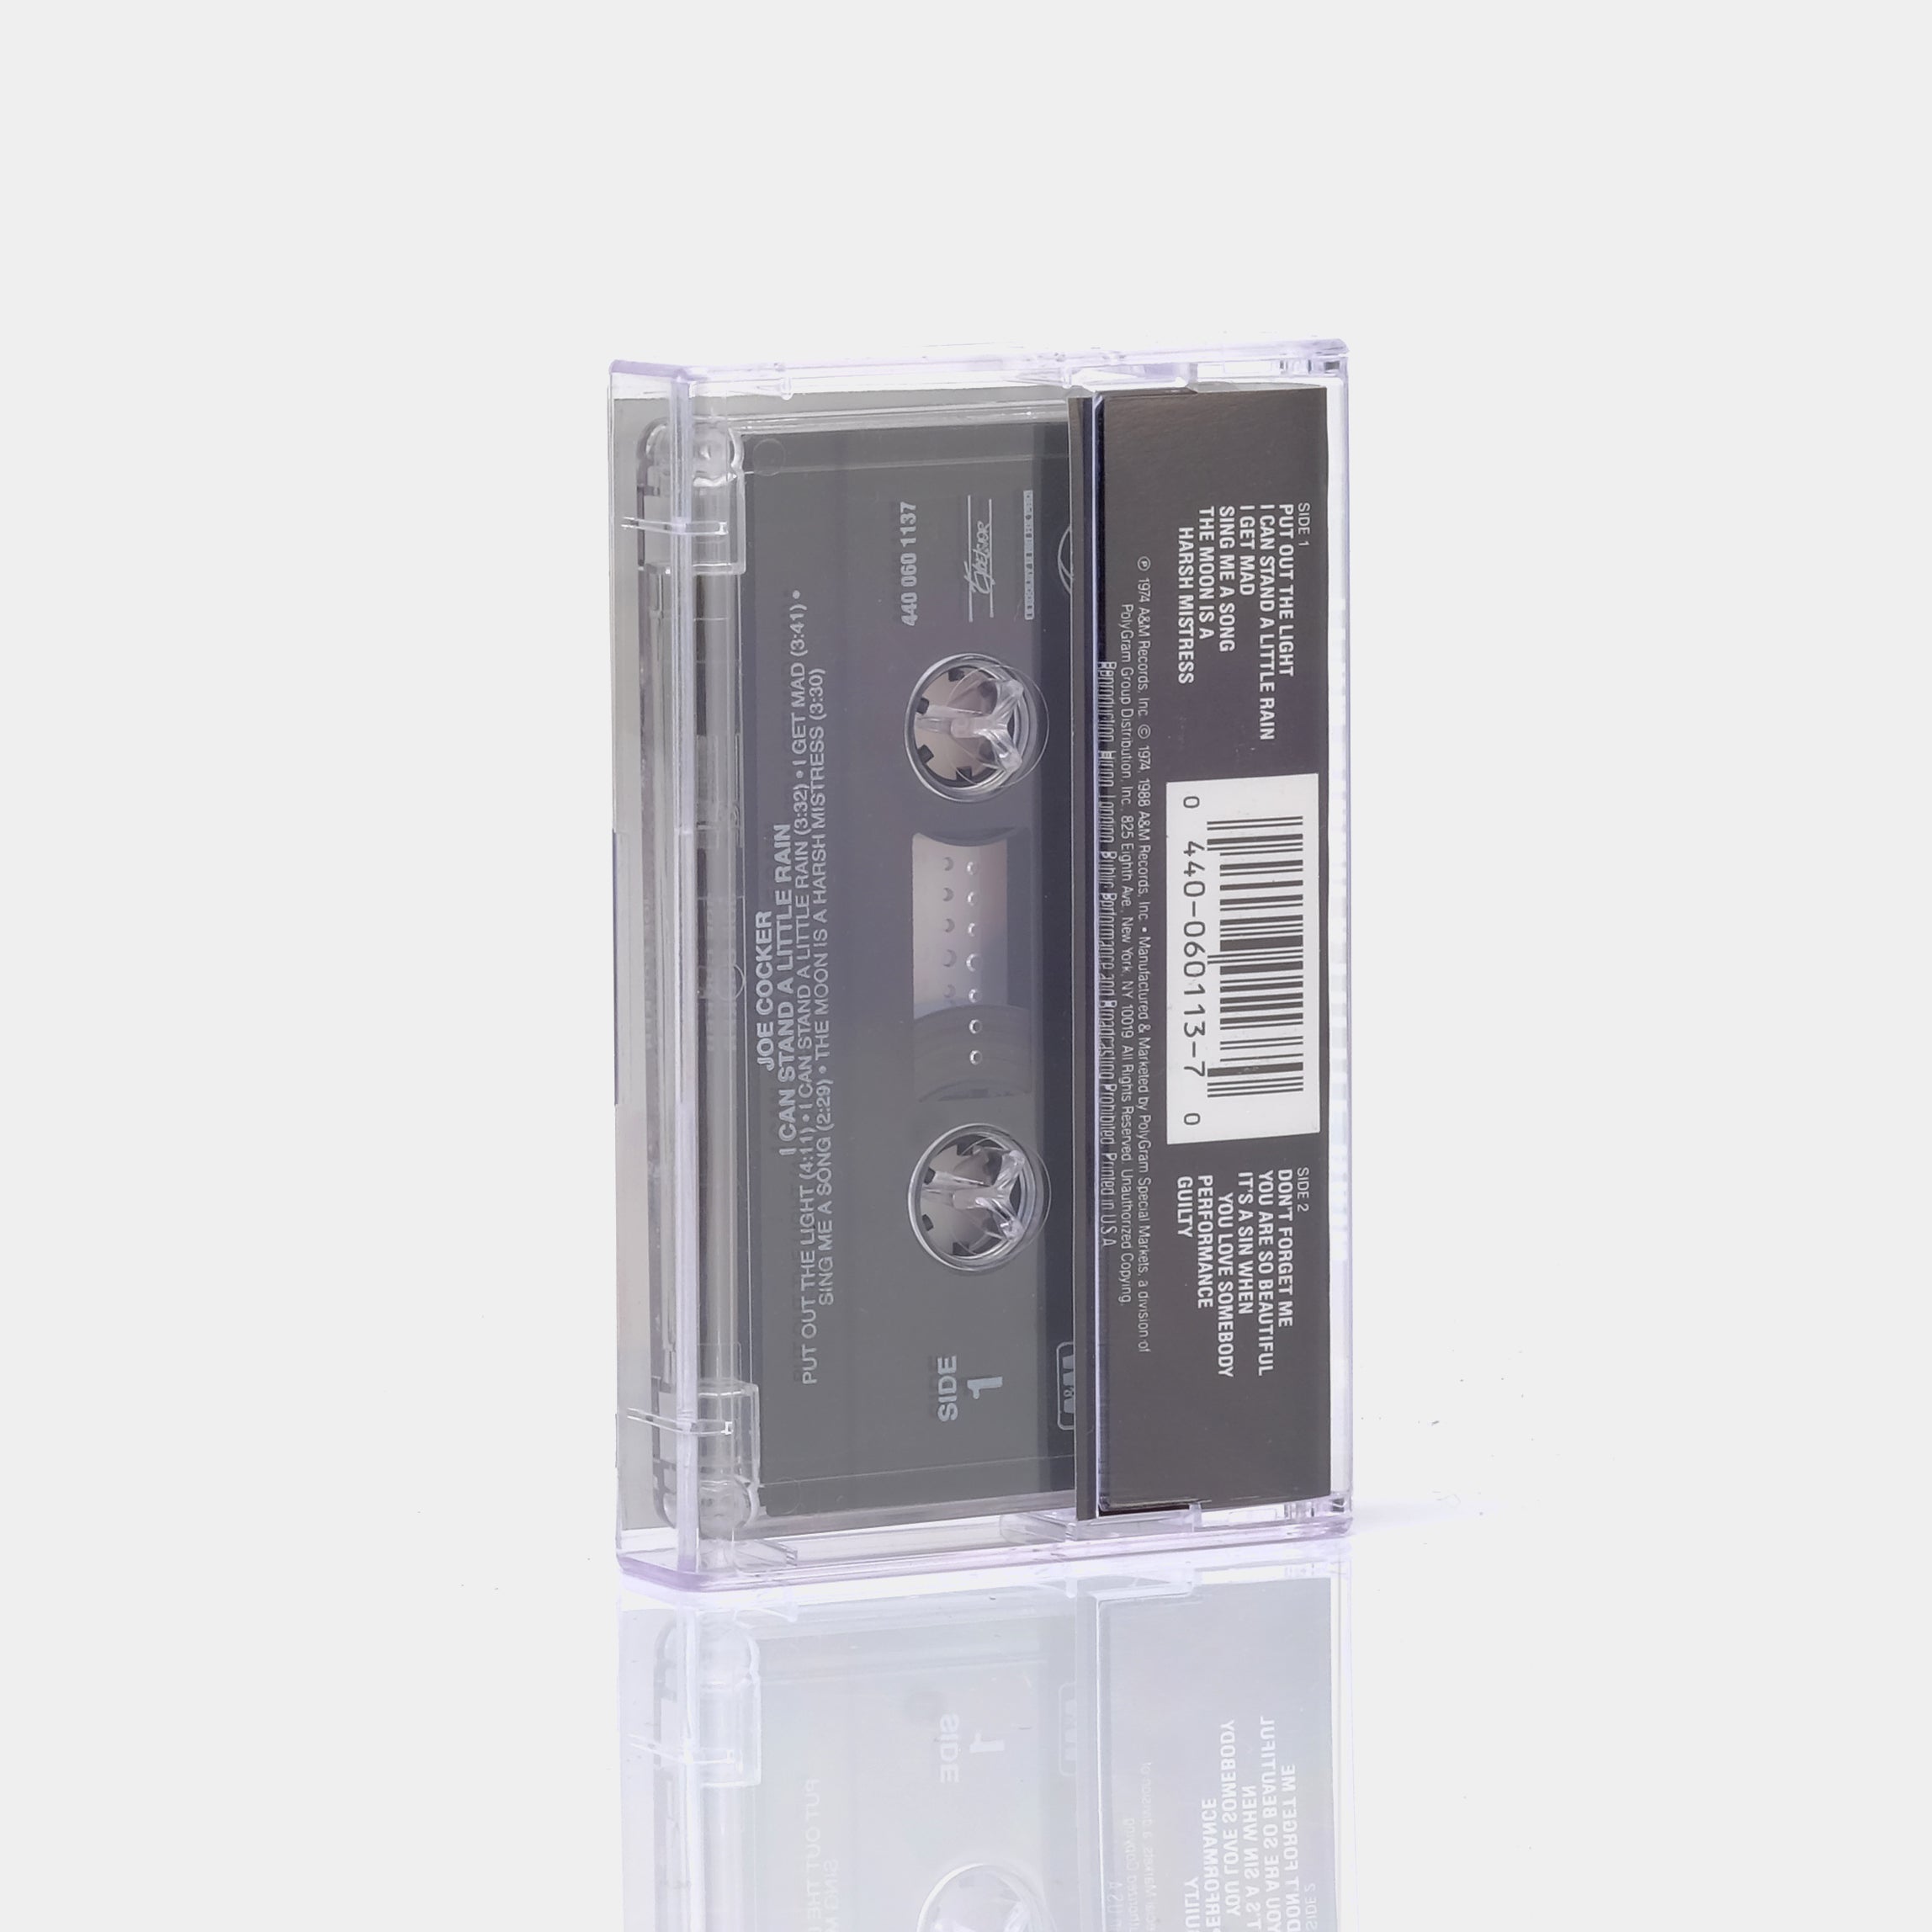 Joe Cocker - I Can Stand A Little Rain Cassette Tape